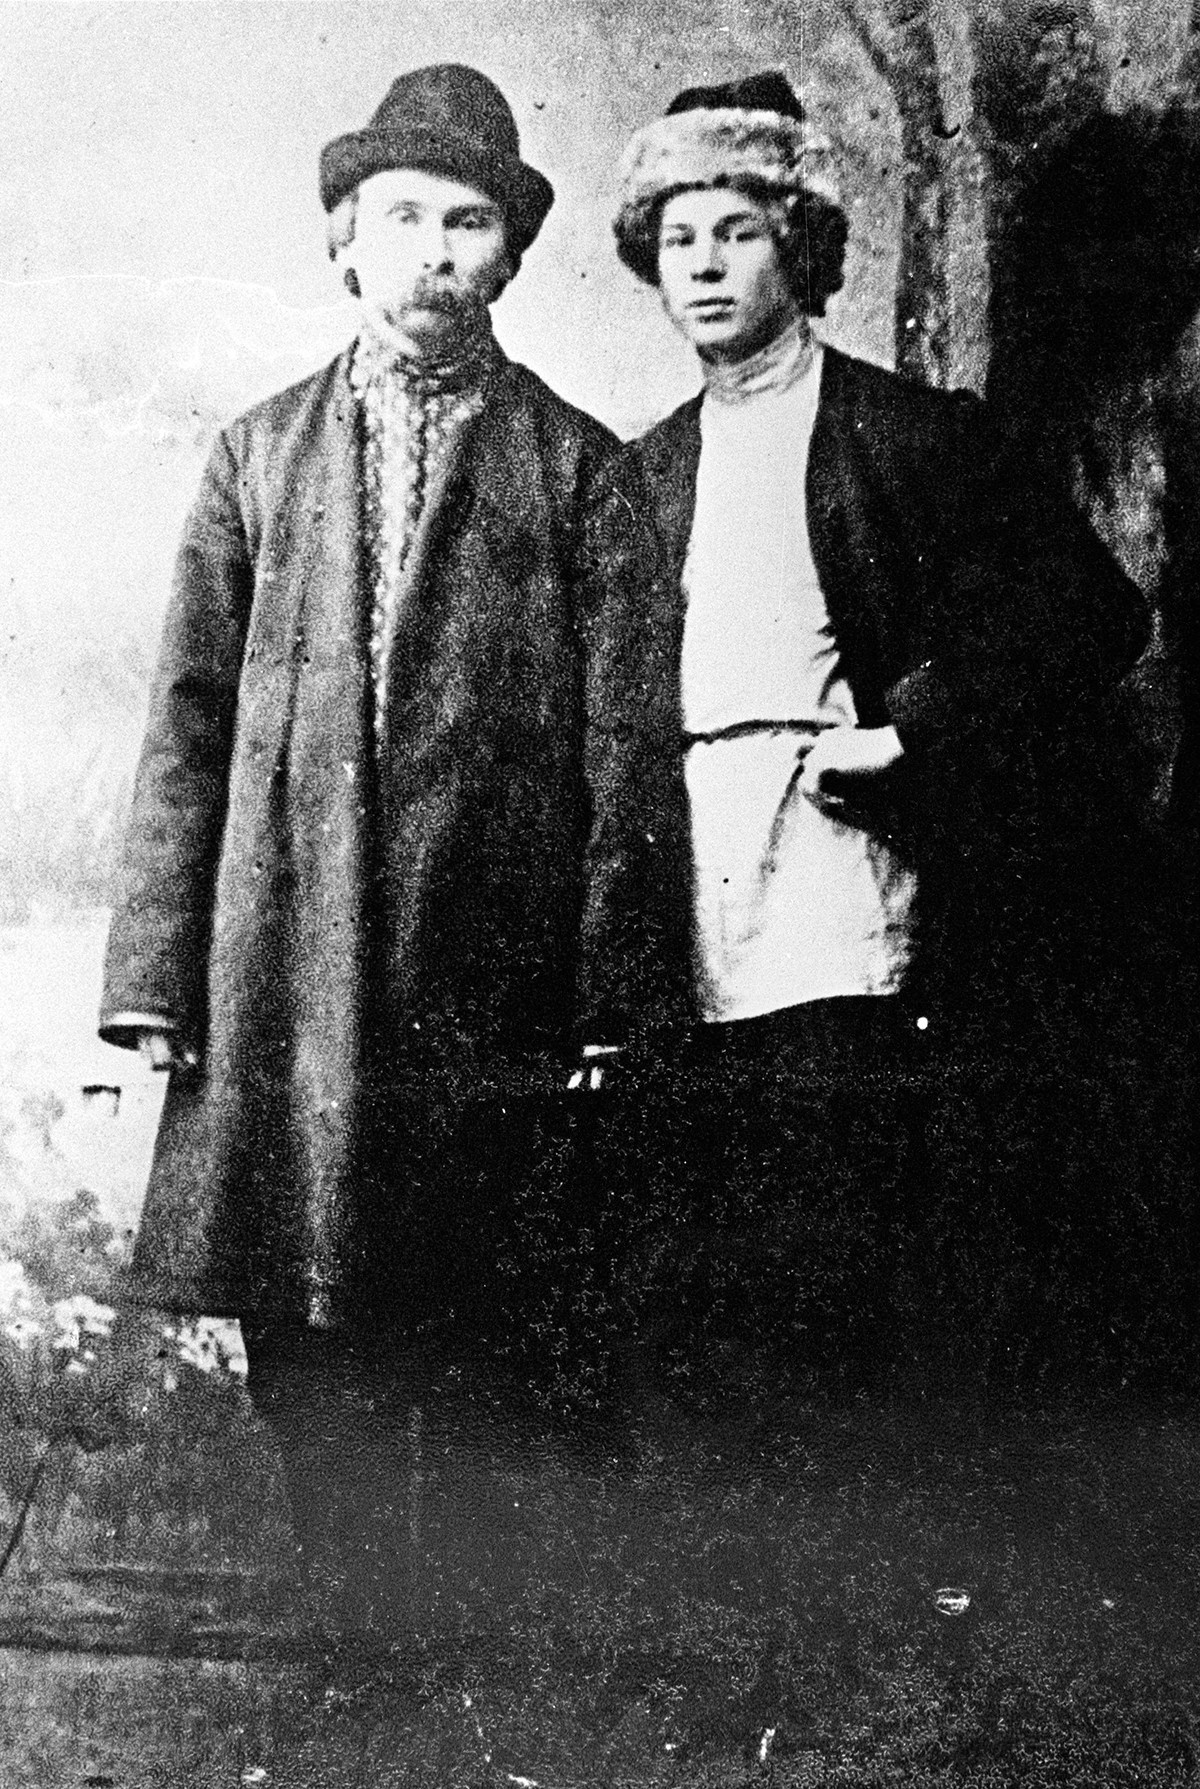 'Petani penyair' Nikolai Klyuev dan Sergei Yesenin (kanan) di Petrograd (sekarang Sankt Peterburg), 1915.